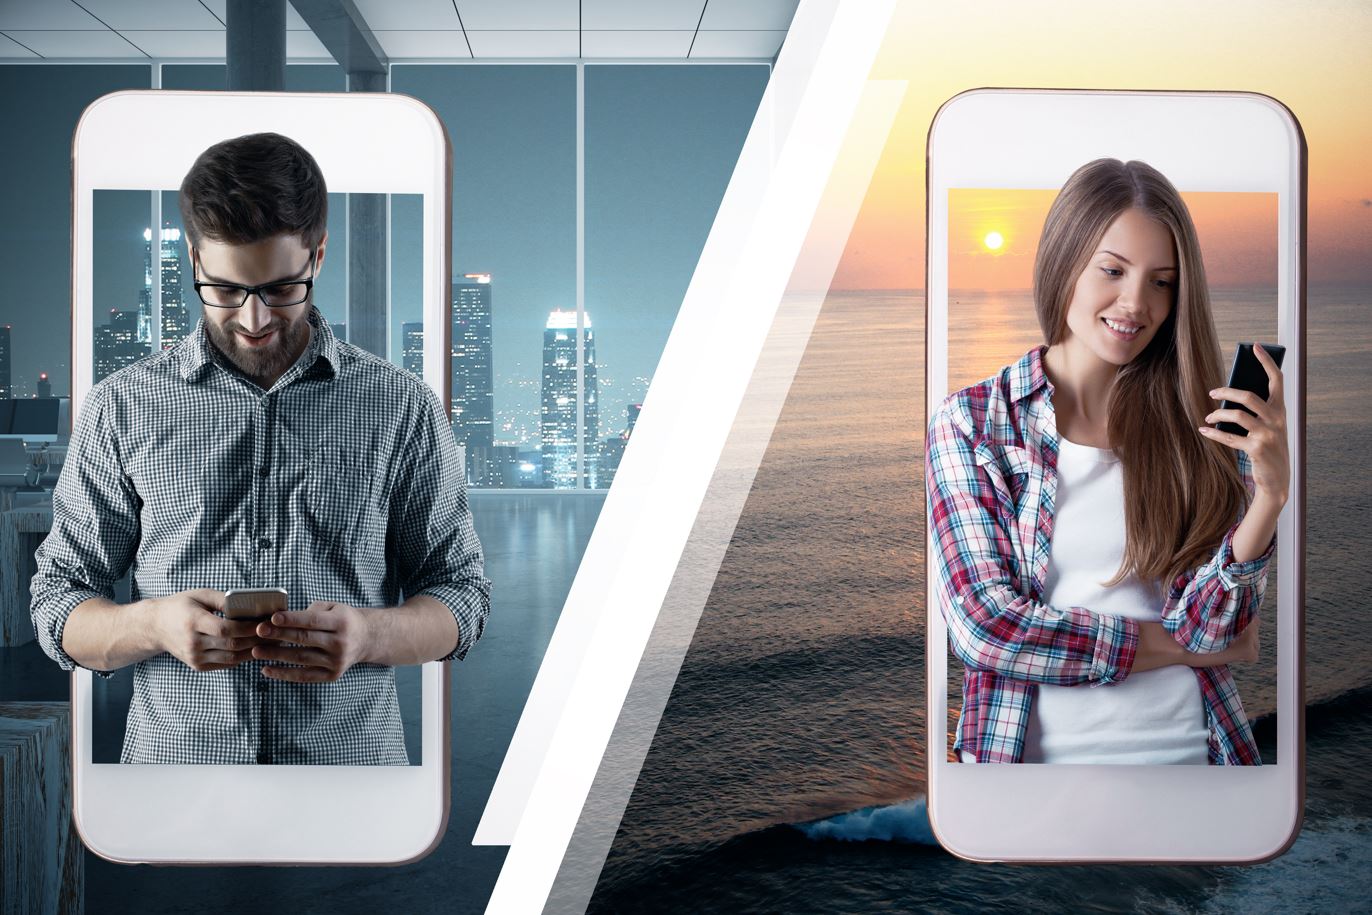 Imagem dividida com um homem de um lado olhando o celular e mulher do outro também olhando celular